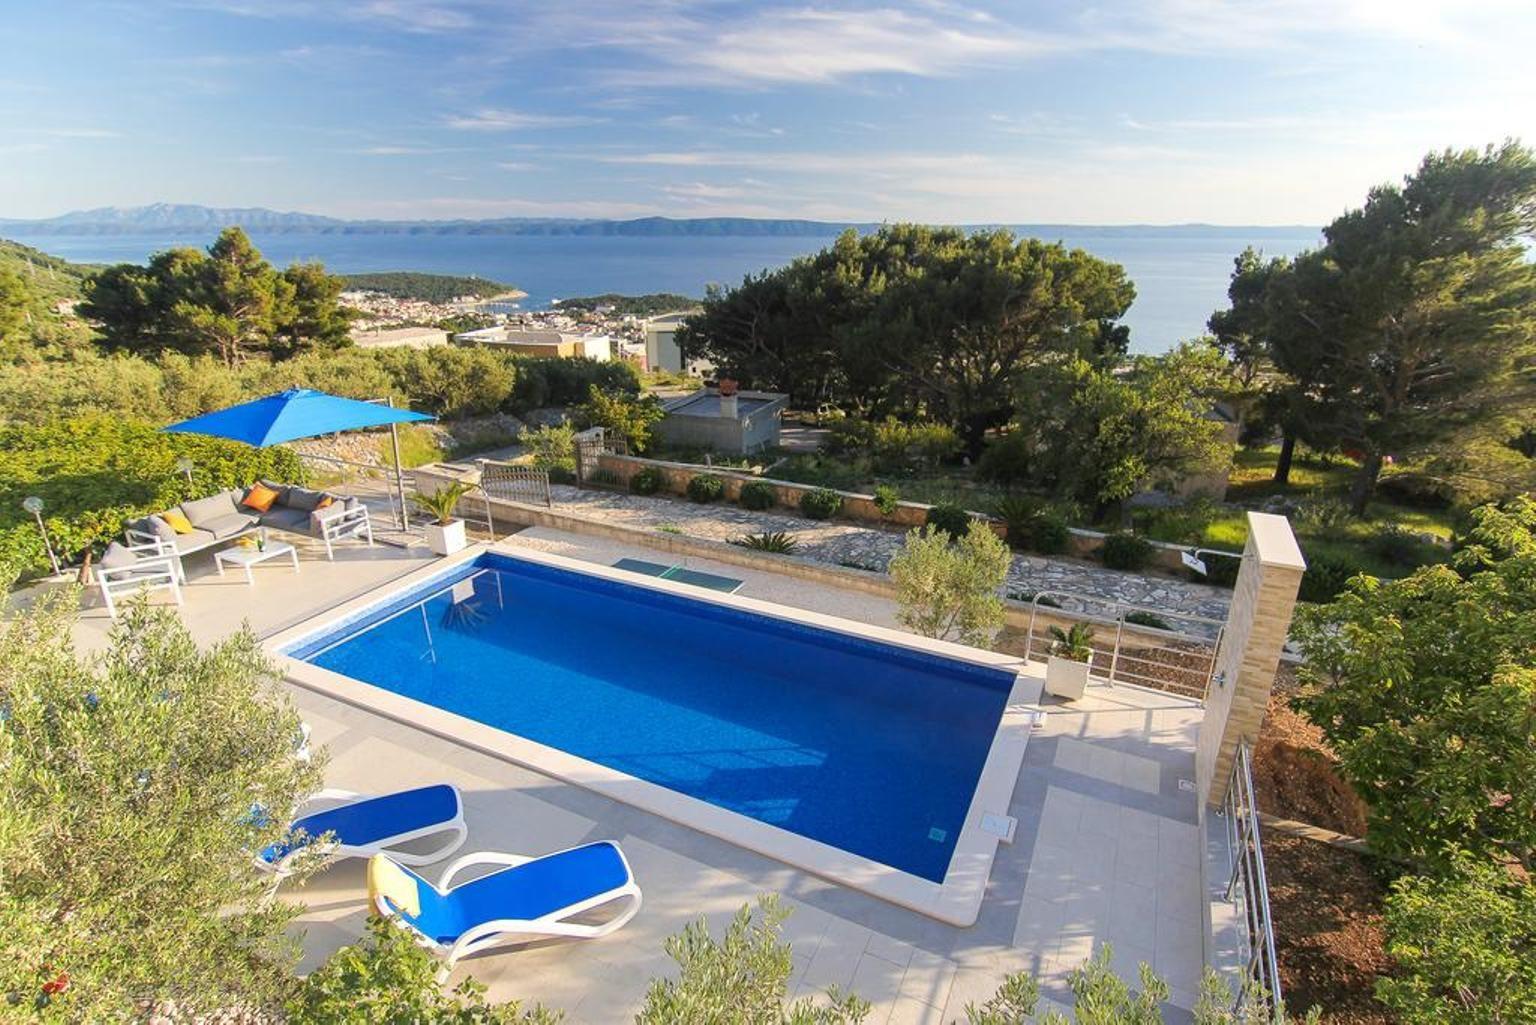 Villa Nolita mit Pool und herrlichem Panoramablick Ferienhaus in Kroatien